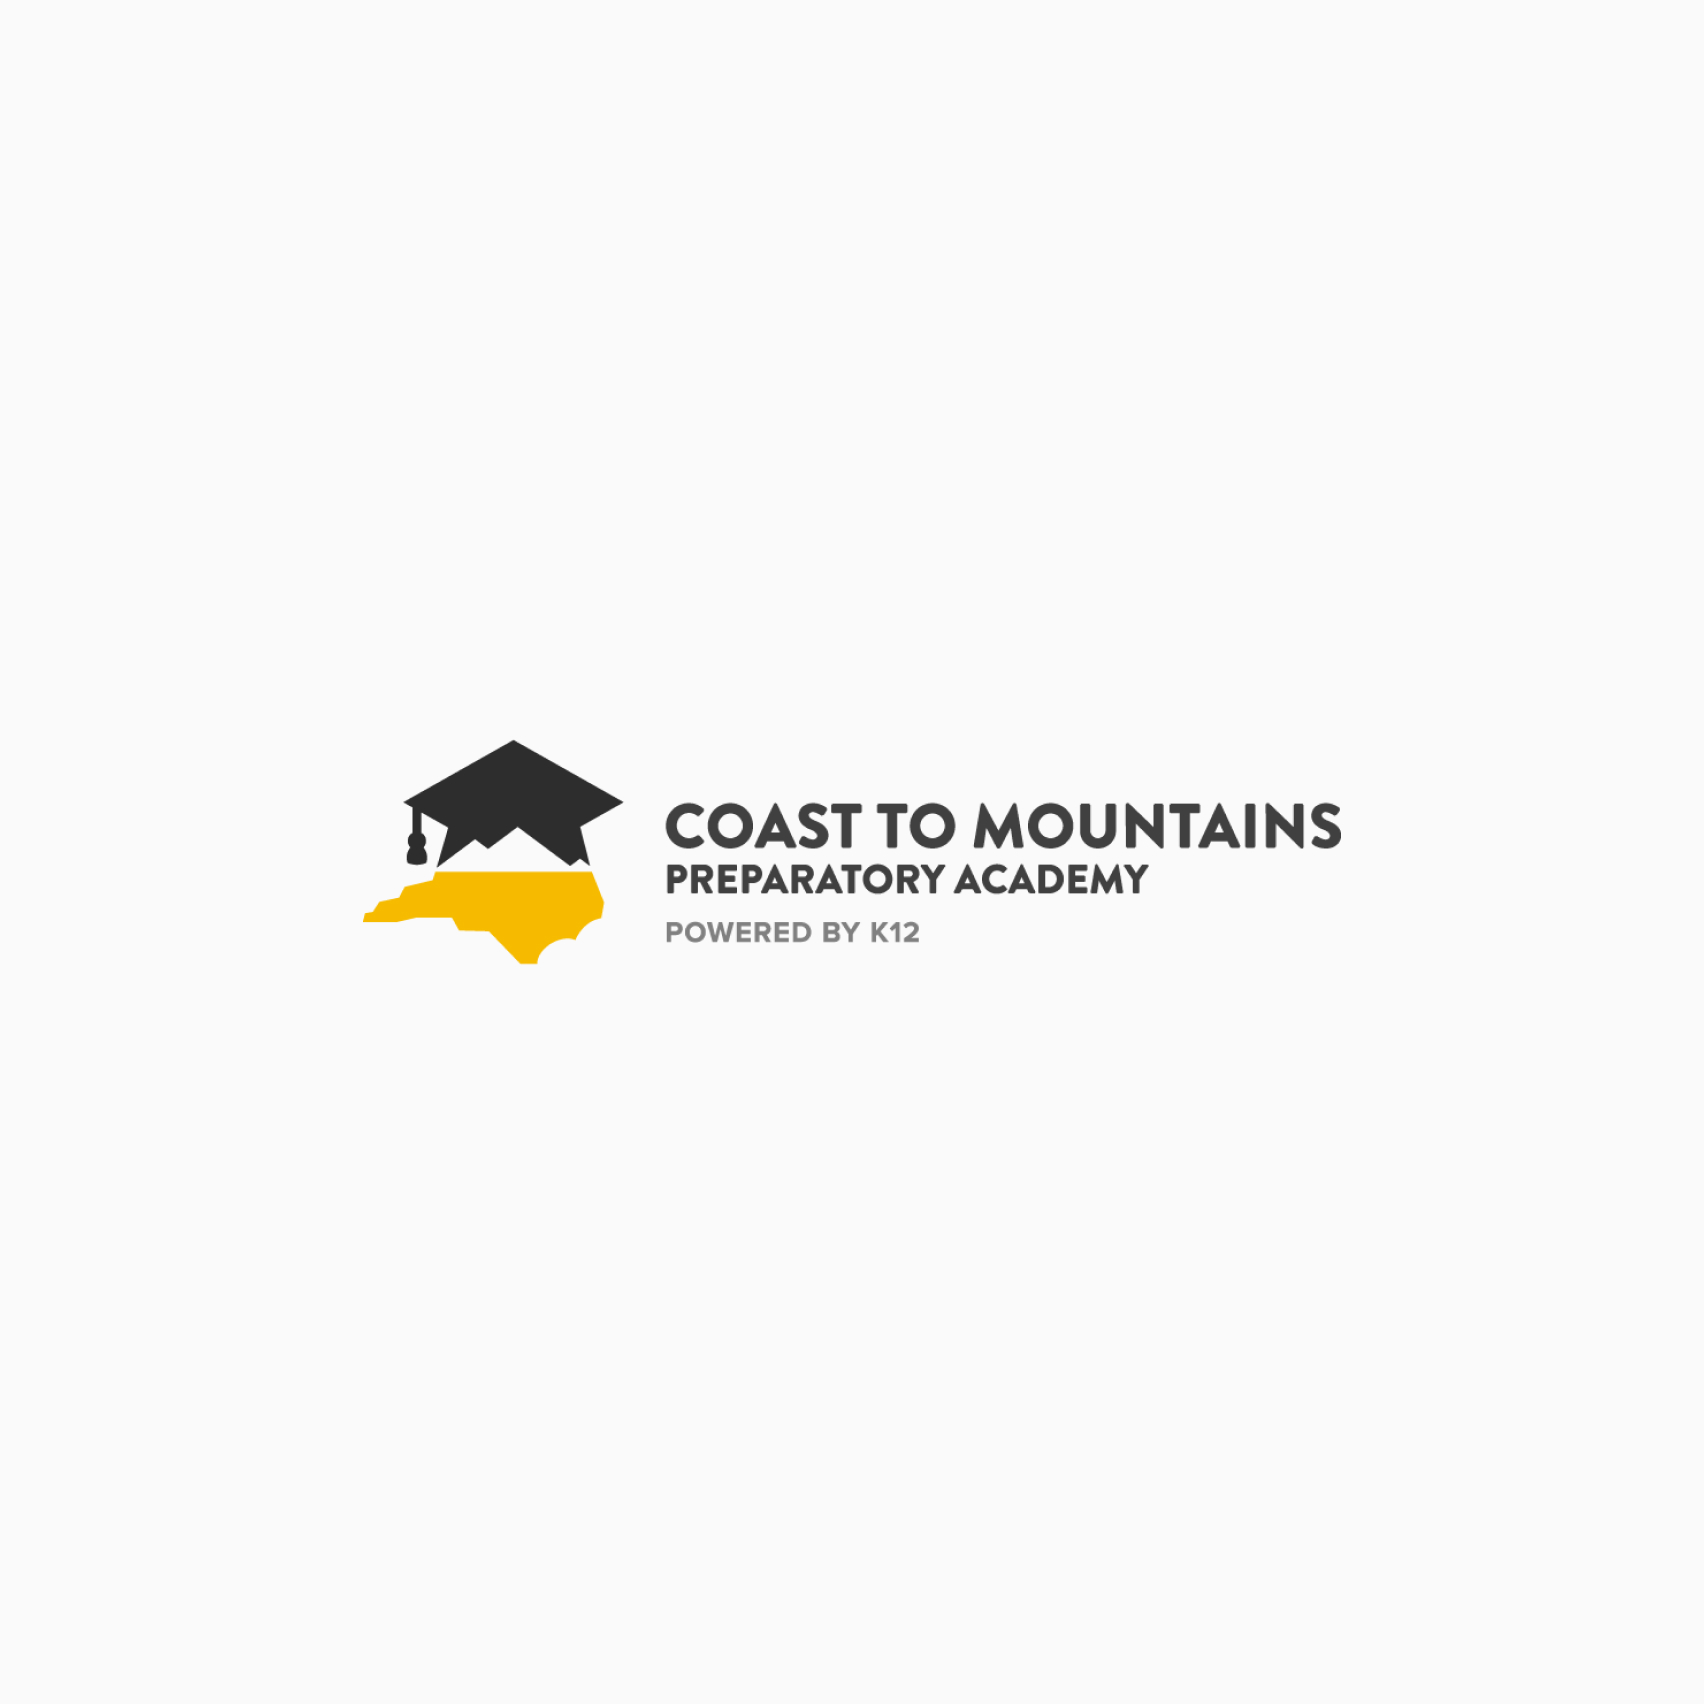 Matrícula y costos imagen 17 (nombre Coast to Mountains)